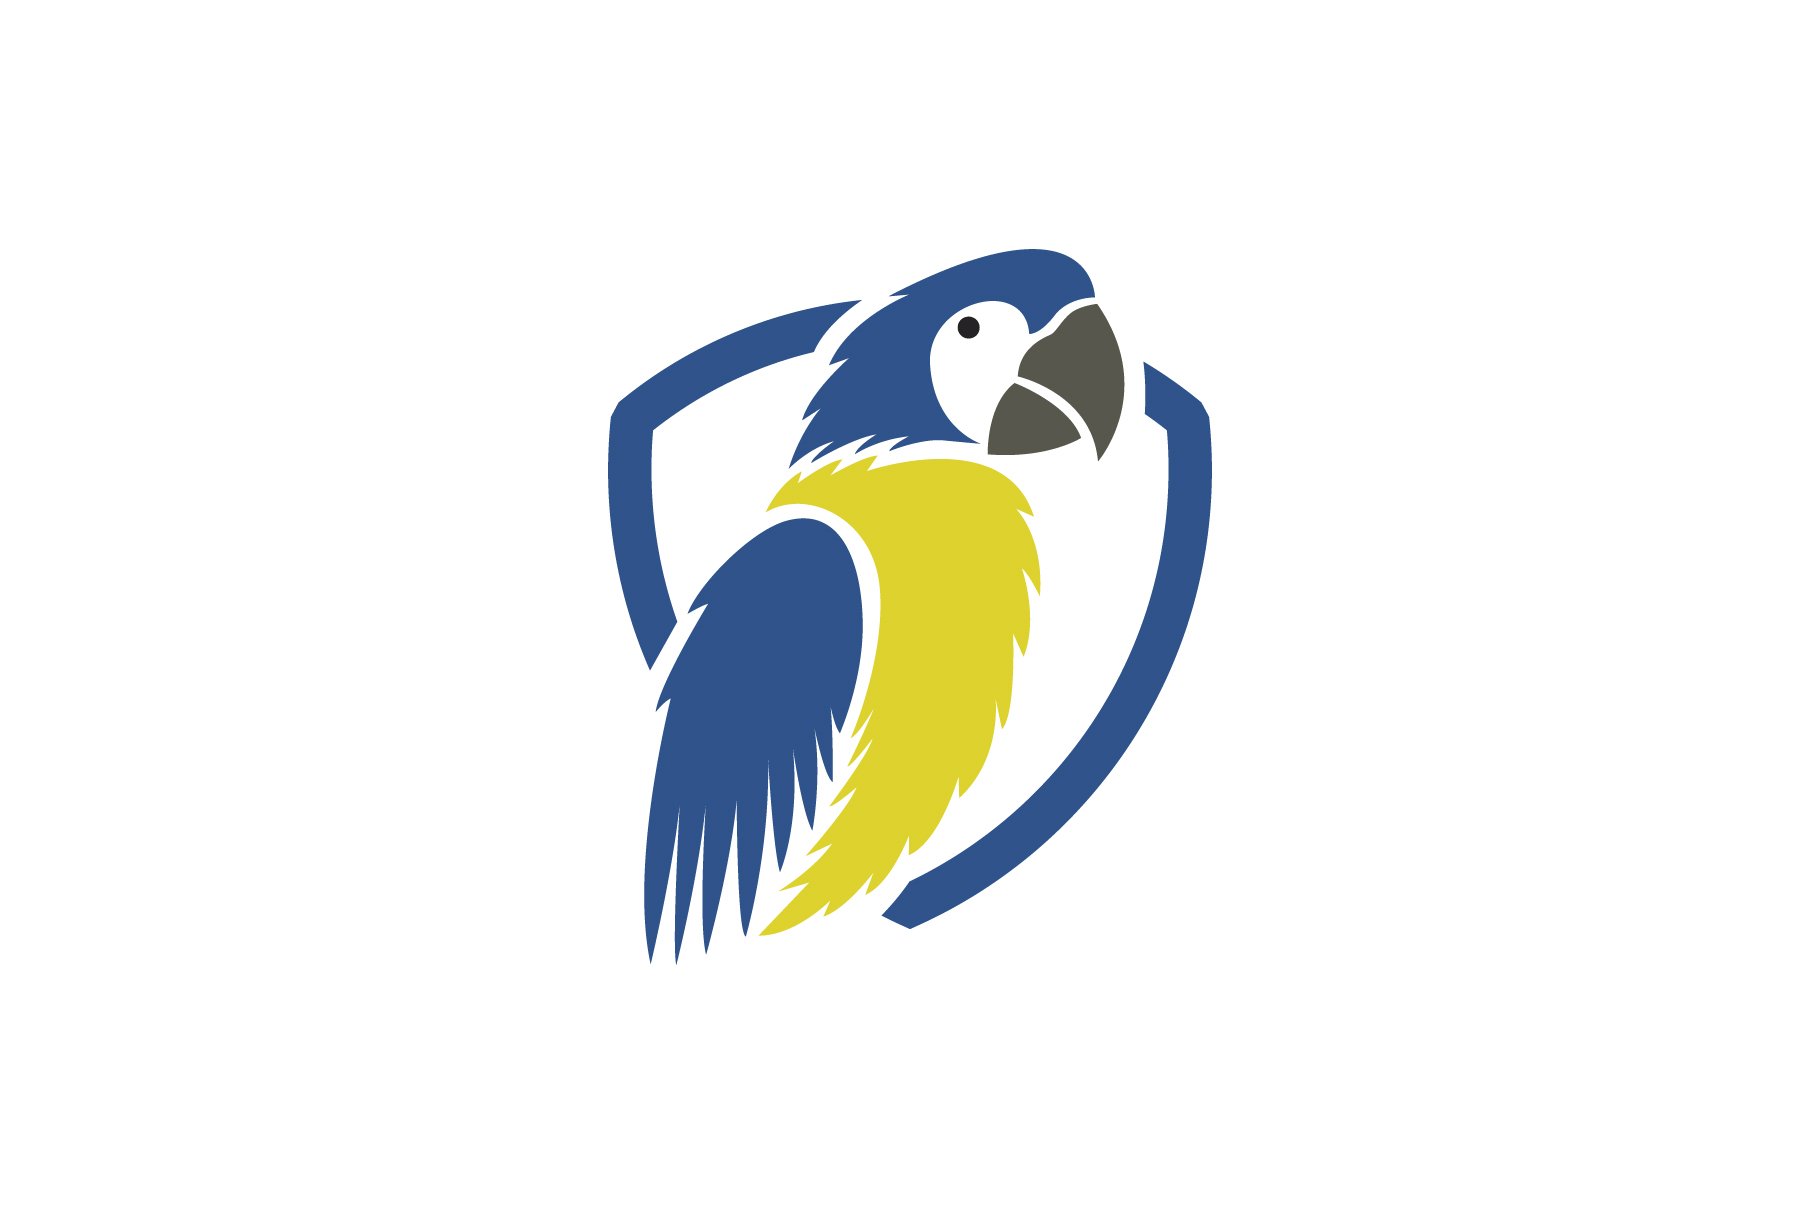 parrot bird logo cover image.